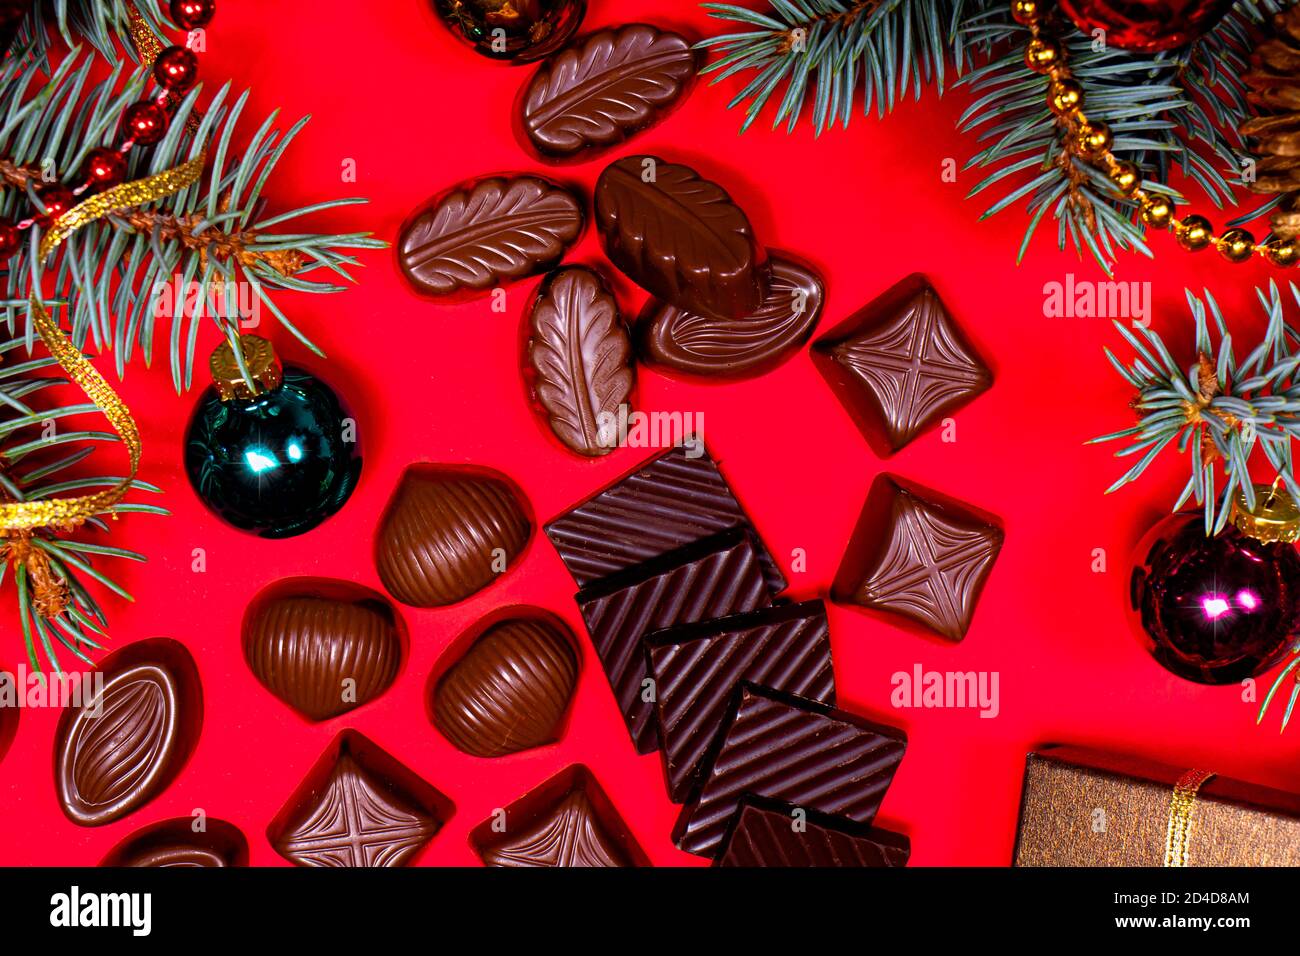 Chocolats sur fond rouge. Décoration et chocolat du nouvel an 2021, bonbons - photo de fête pour la confiserie. Banque D'Images